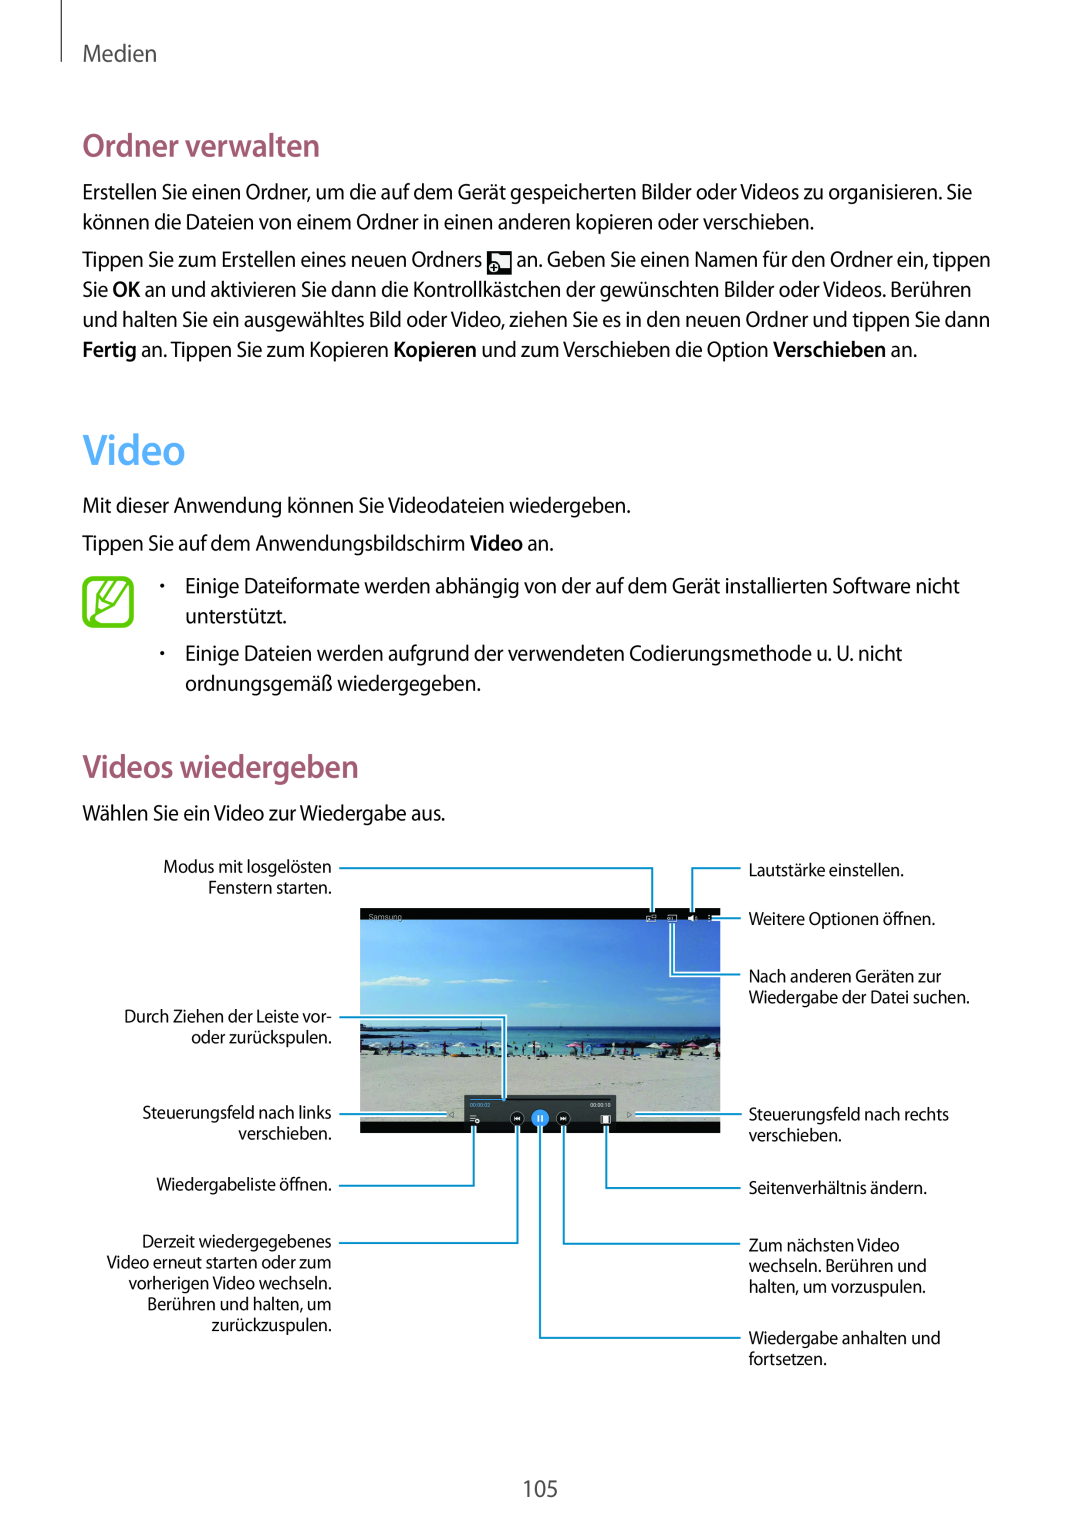 Samsung SM-P9000ZKAXEO manual Ordner verwalten, Videos wiedergeben, Medien, Steuerungsfeld nach links verschieben 